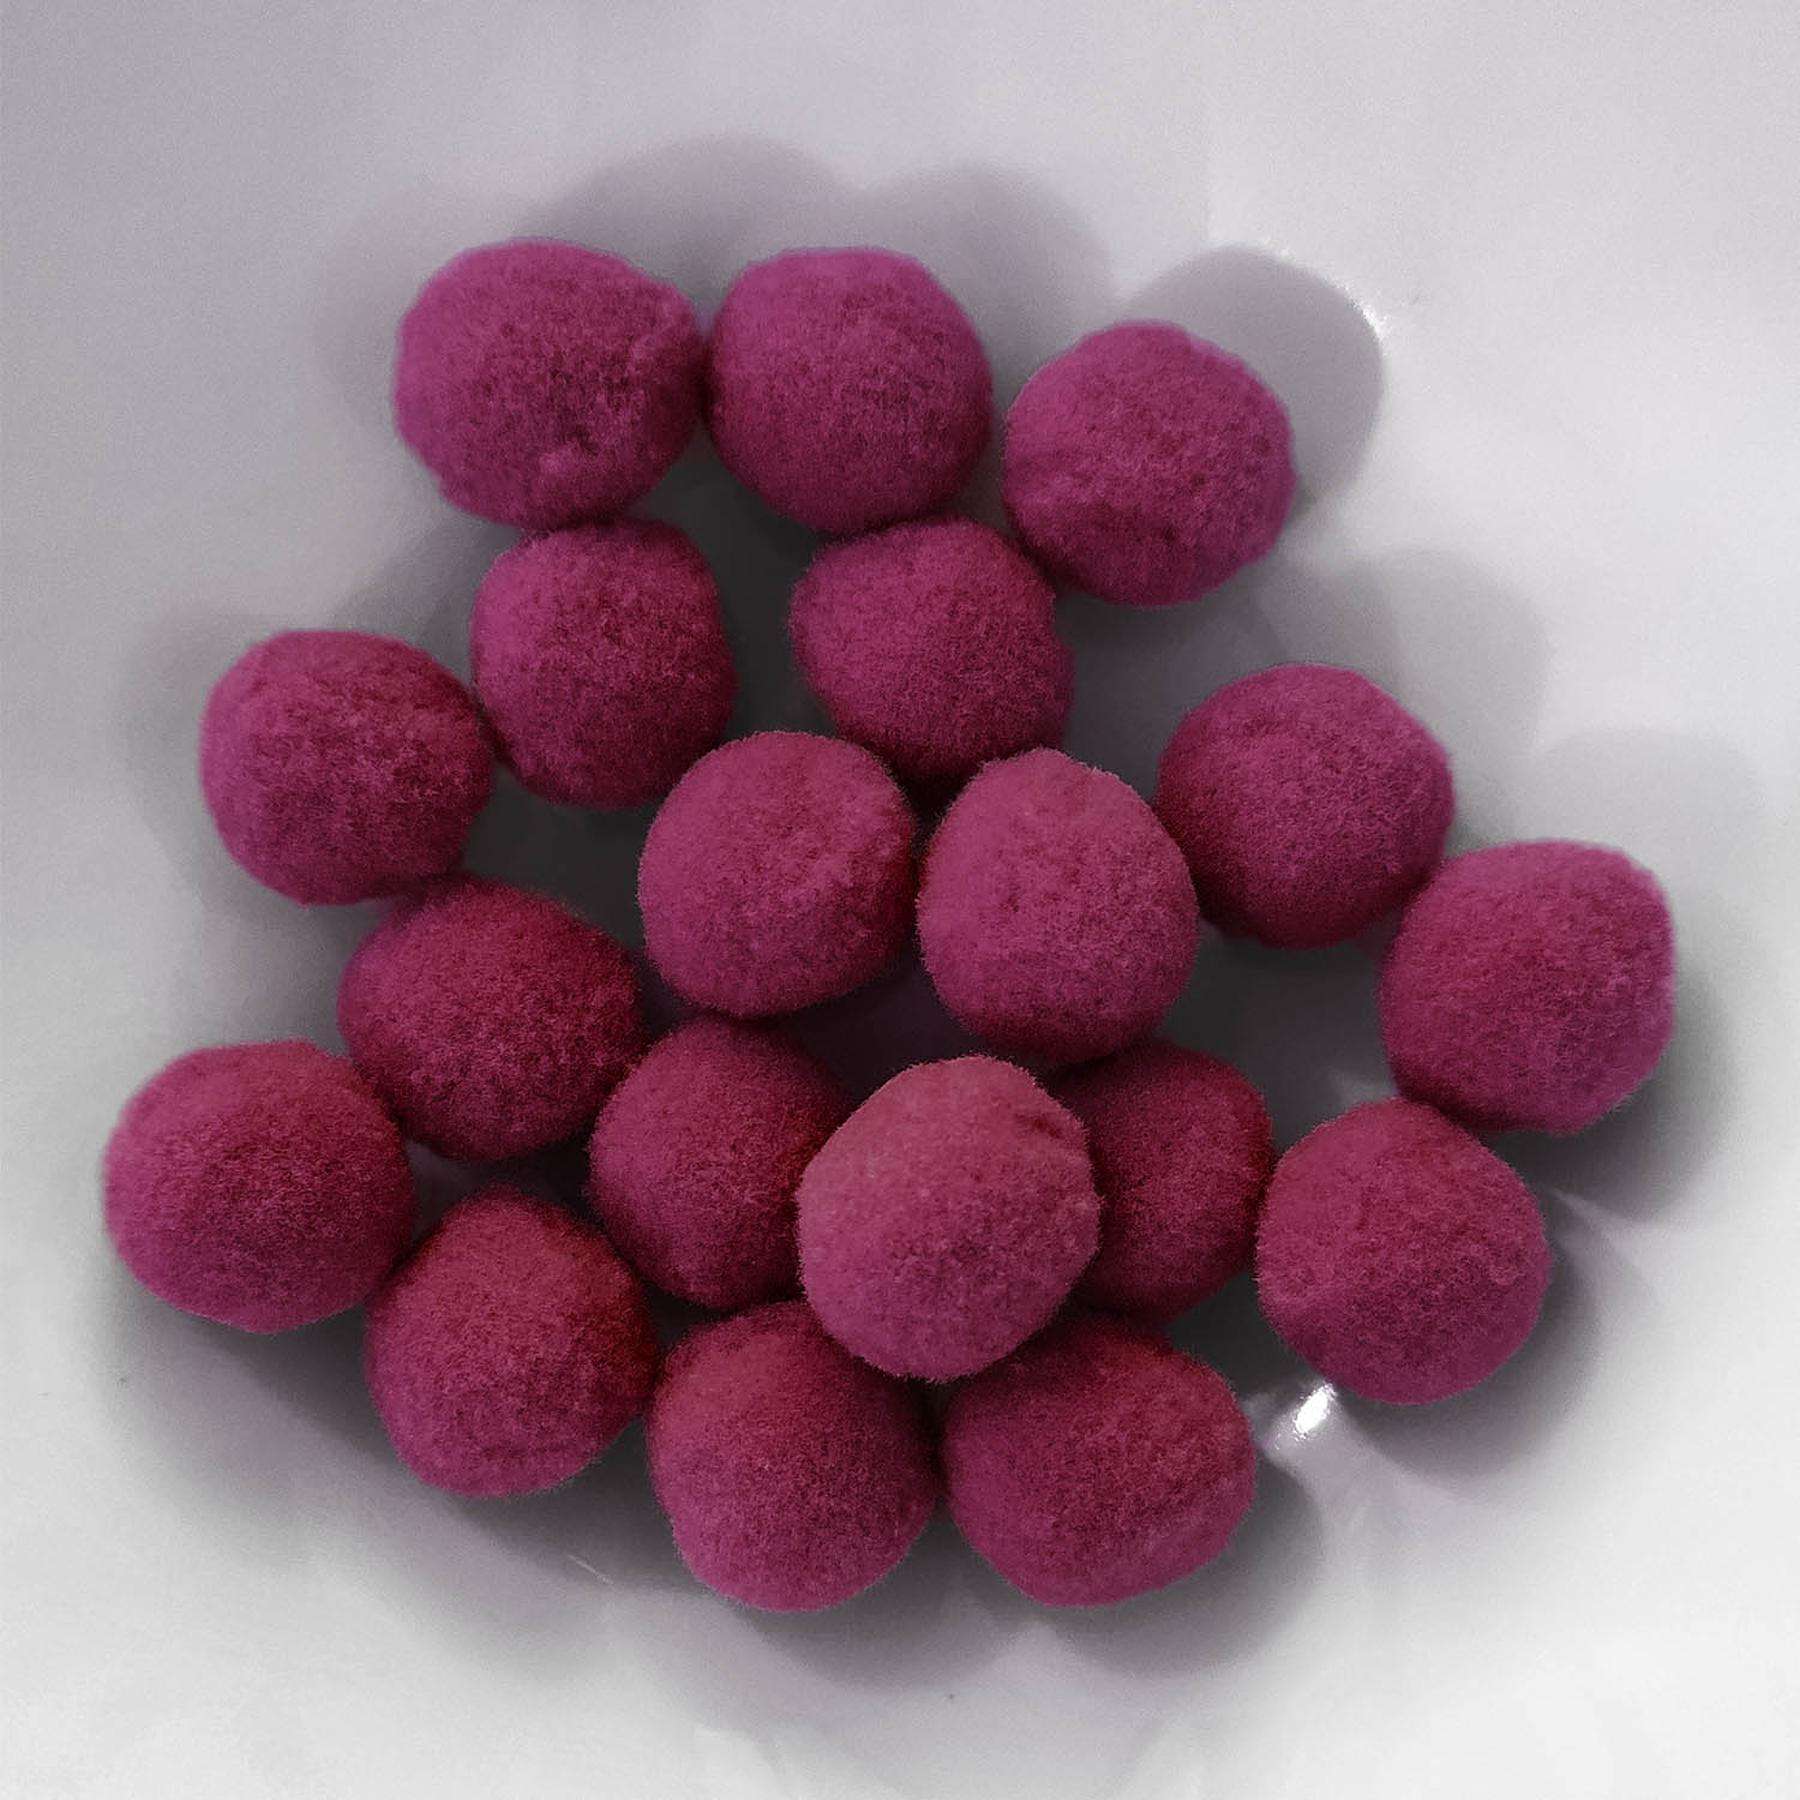 PomPon / Bälle aus Baumwolle - 20 mm / 25er Set - Pink